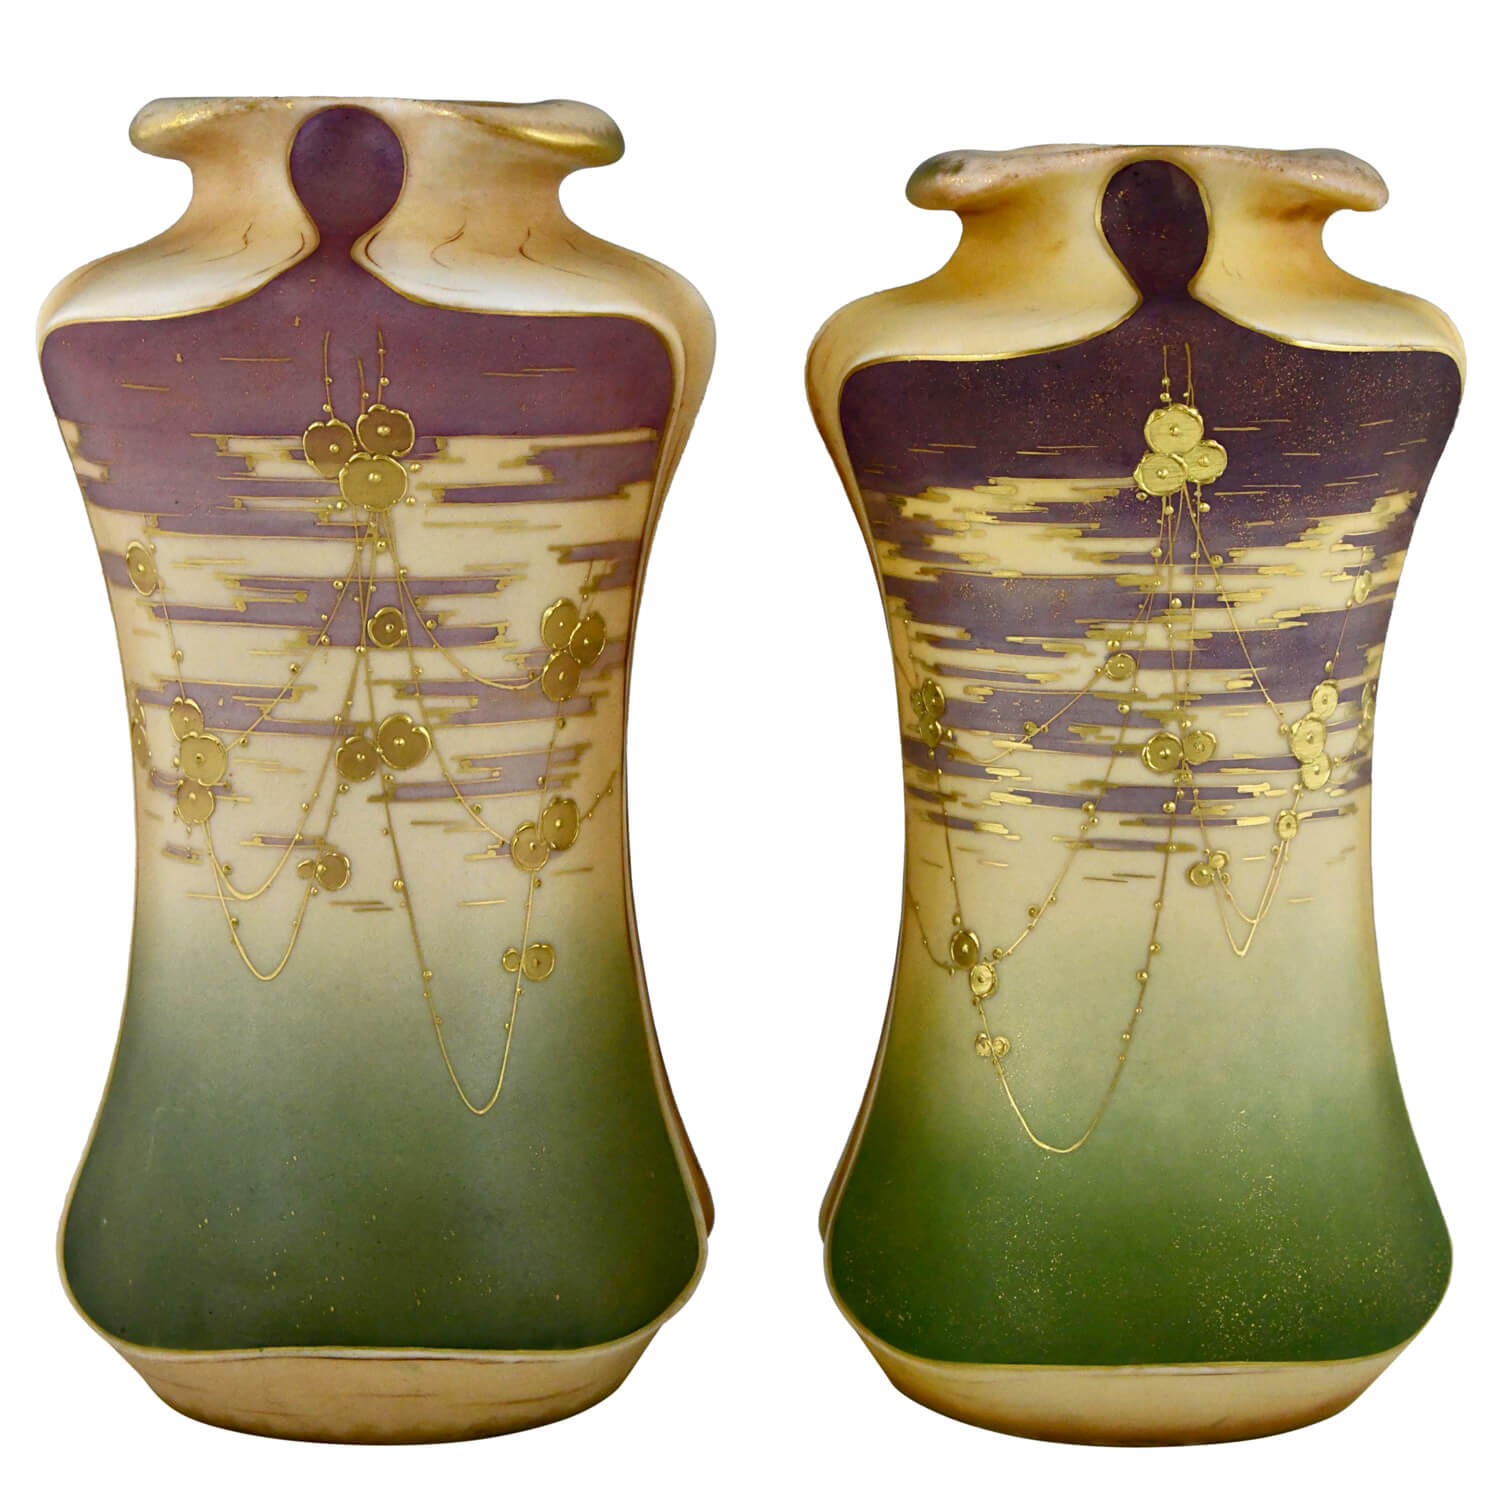 Art Nouveau vases Amphora pair - 1